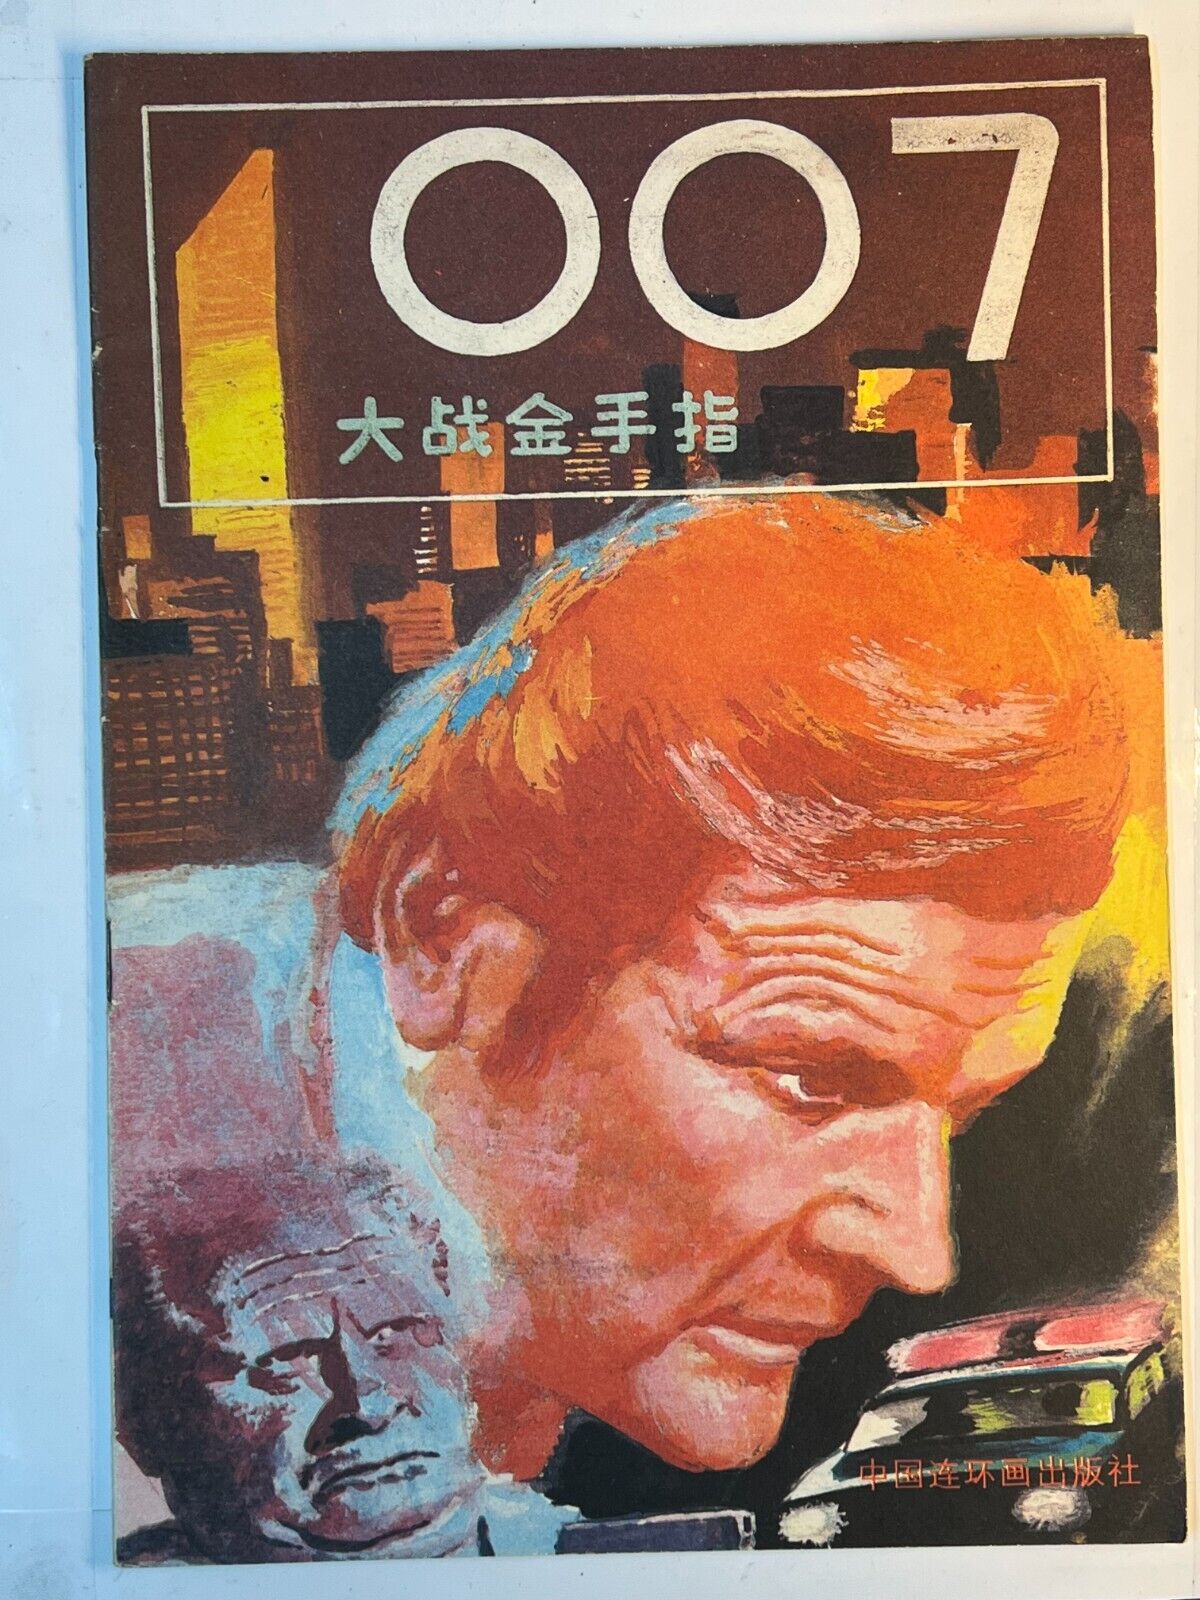 007 james bond chinese comic 1989 VS Goldfinger